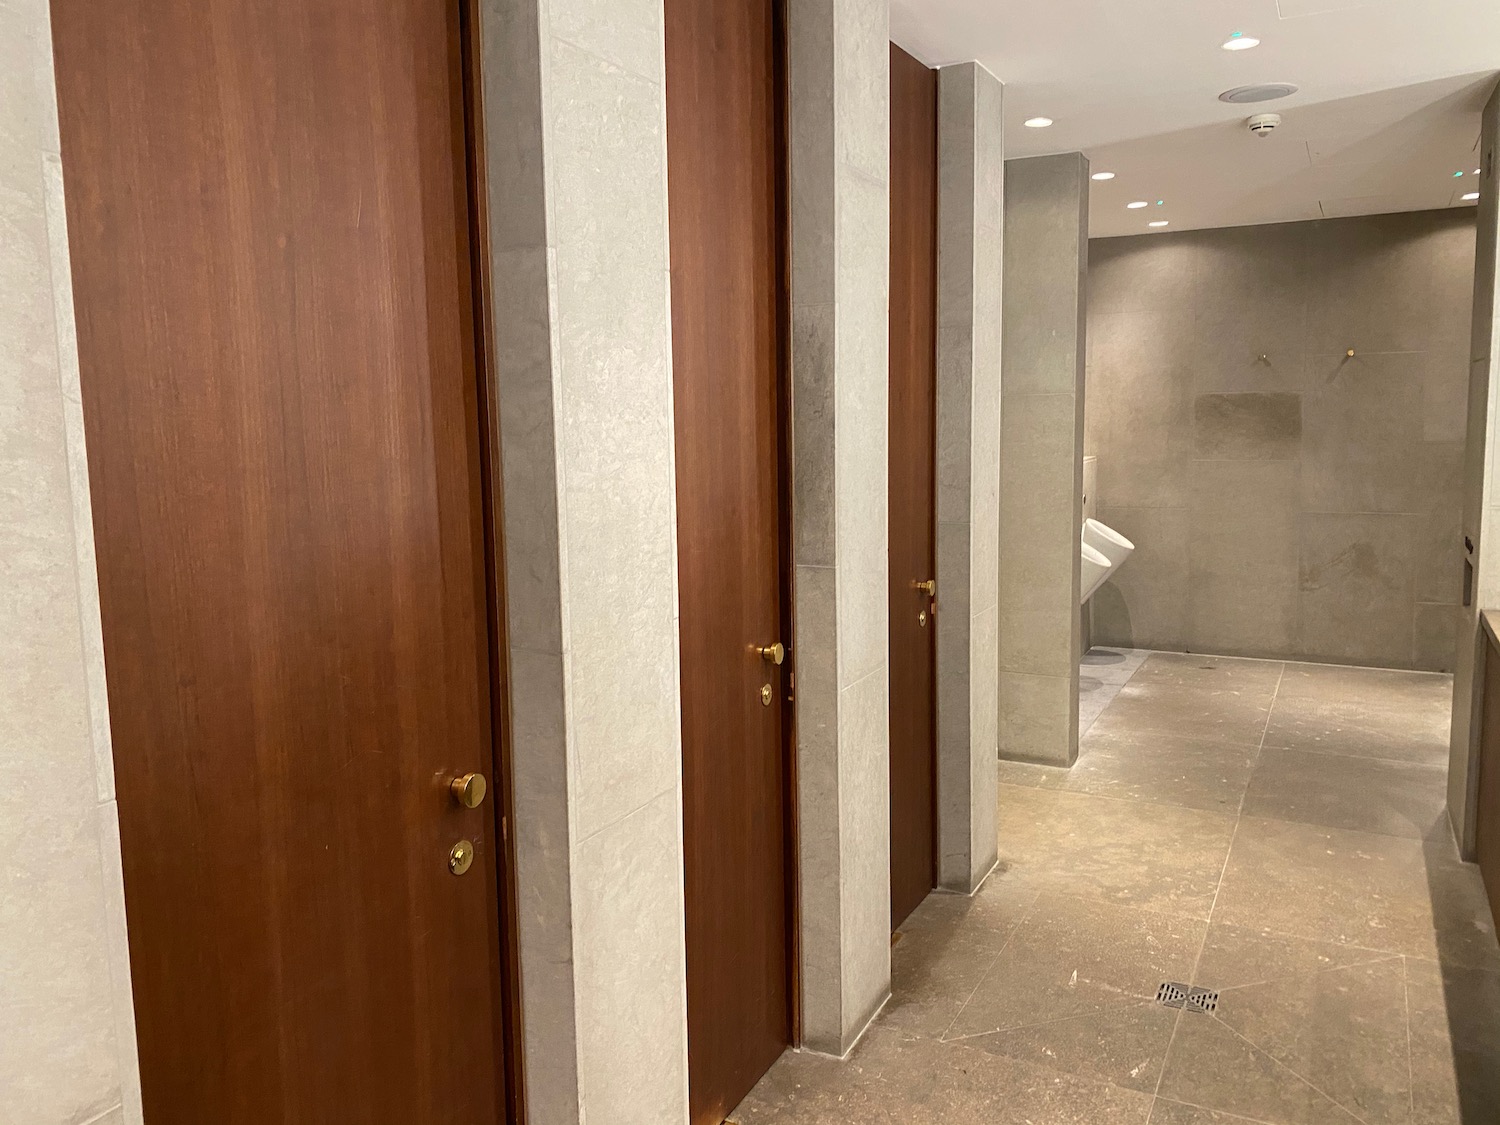 a row of doors in a bathroom